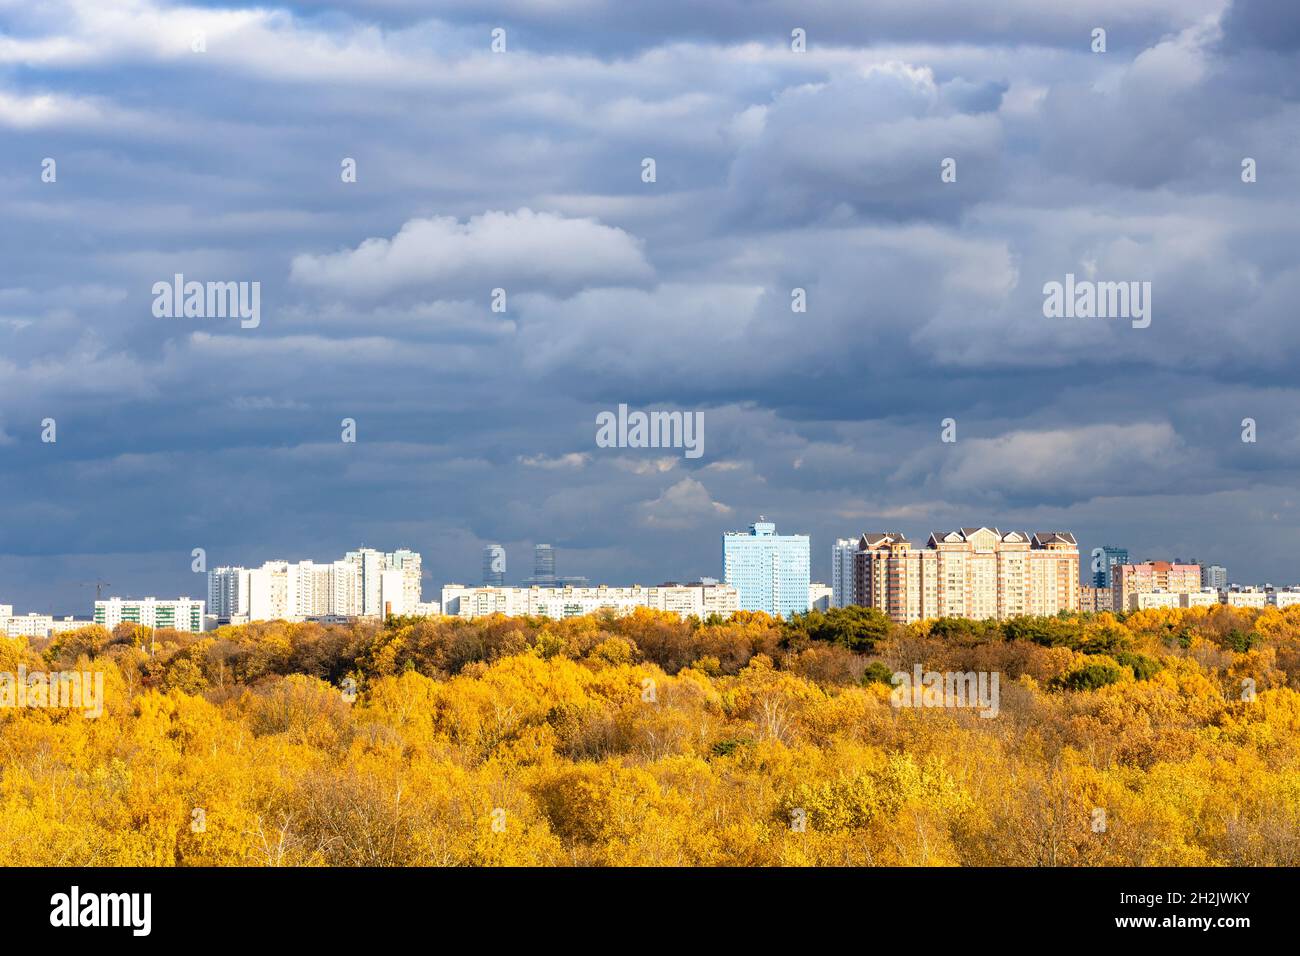 moderne case urbane e parco cittadino giallo illuminato dal sole sotto le nuvole di pioggia grigio scuro in cielo il giorno autunnale prima della pioggia Foto Stock